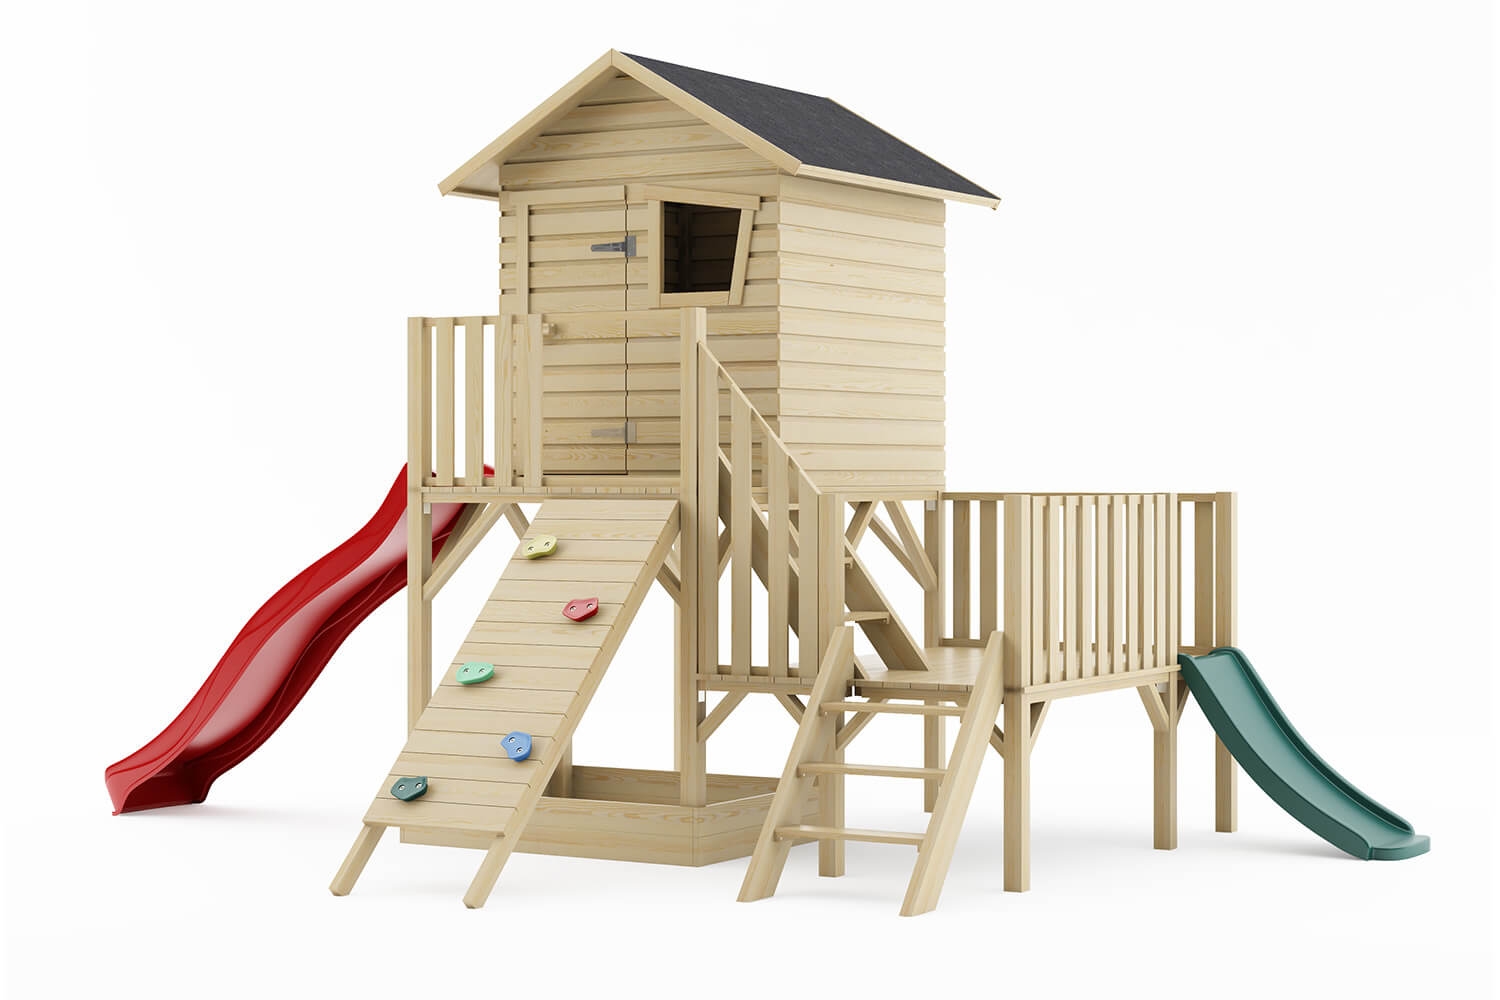 Drewniany domek ogrodowy dla dzieci - Hipcio z dwoma ślizgami i ścianką wspinaczkową